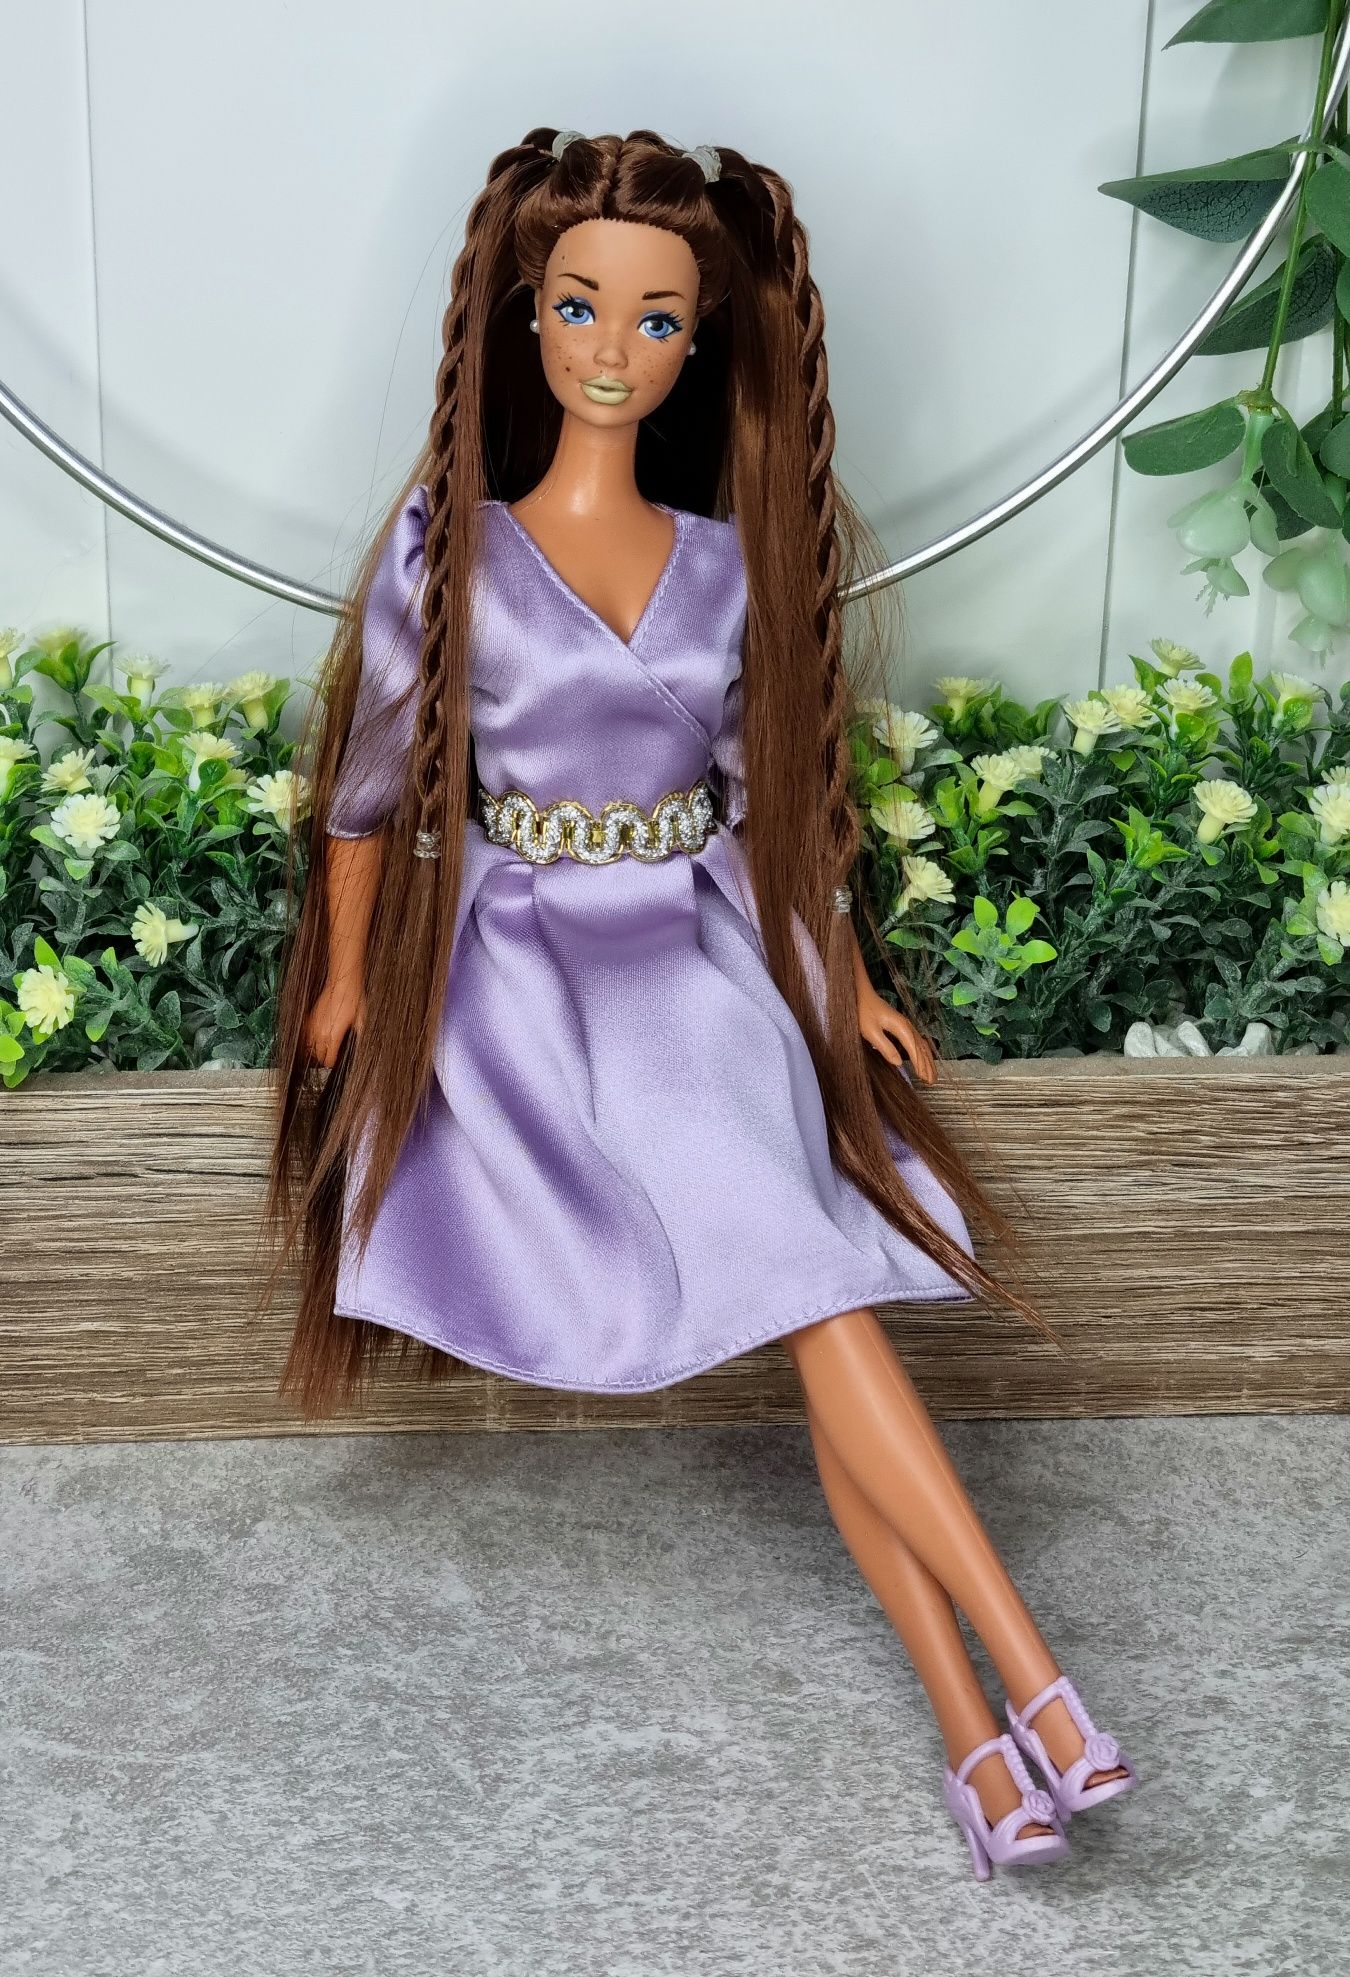 Papusa Barbie PJ Malibu custom OOAK Reroot vintage par lung